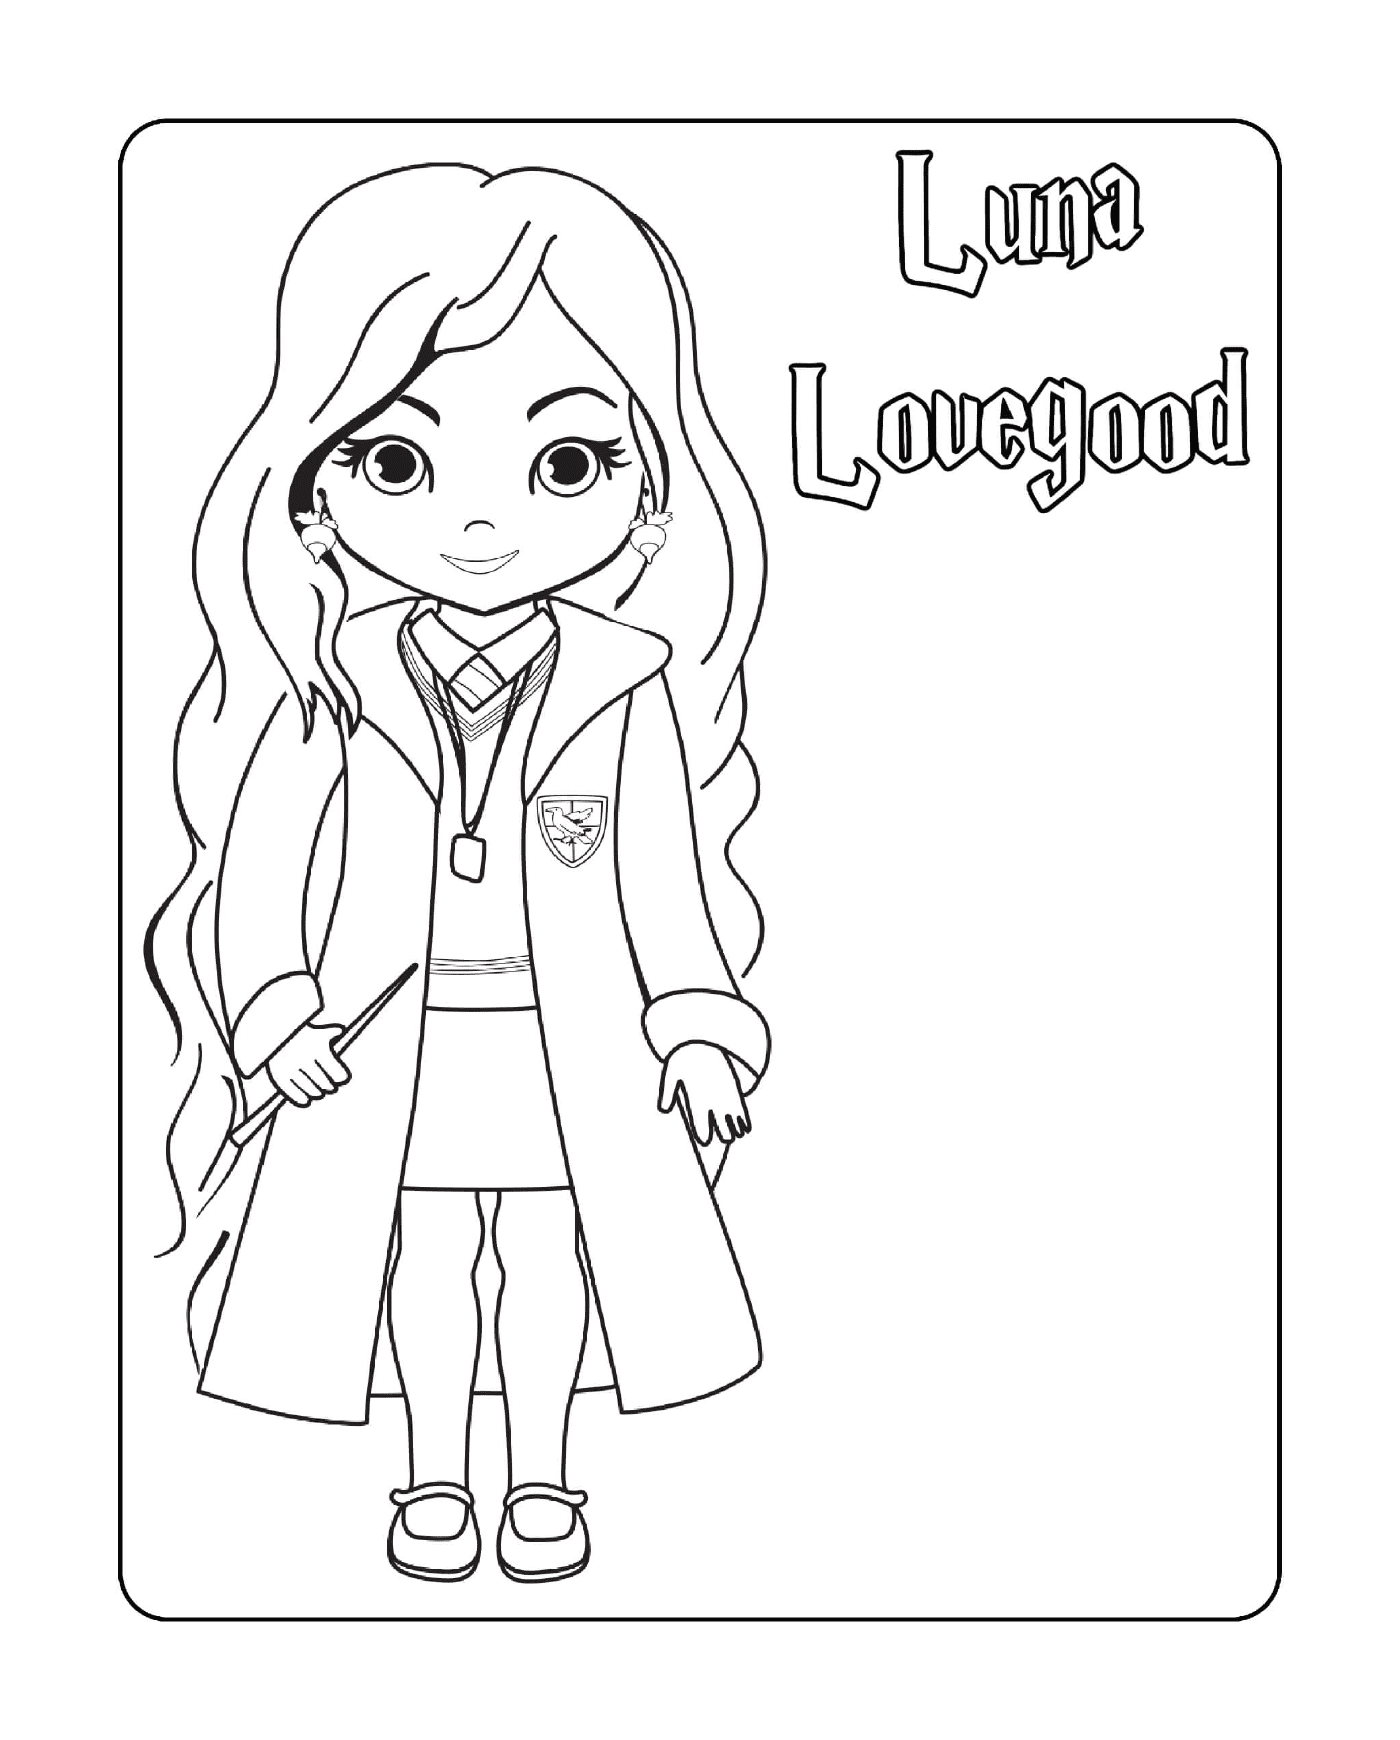  Luna Lovegood, bacchetta in mano 